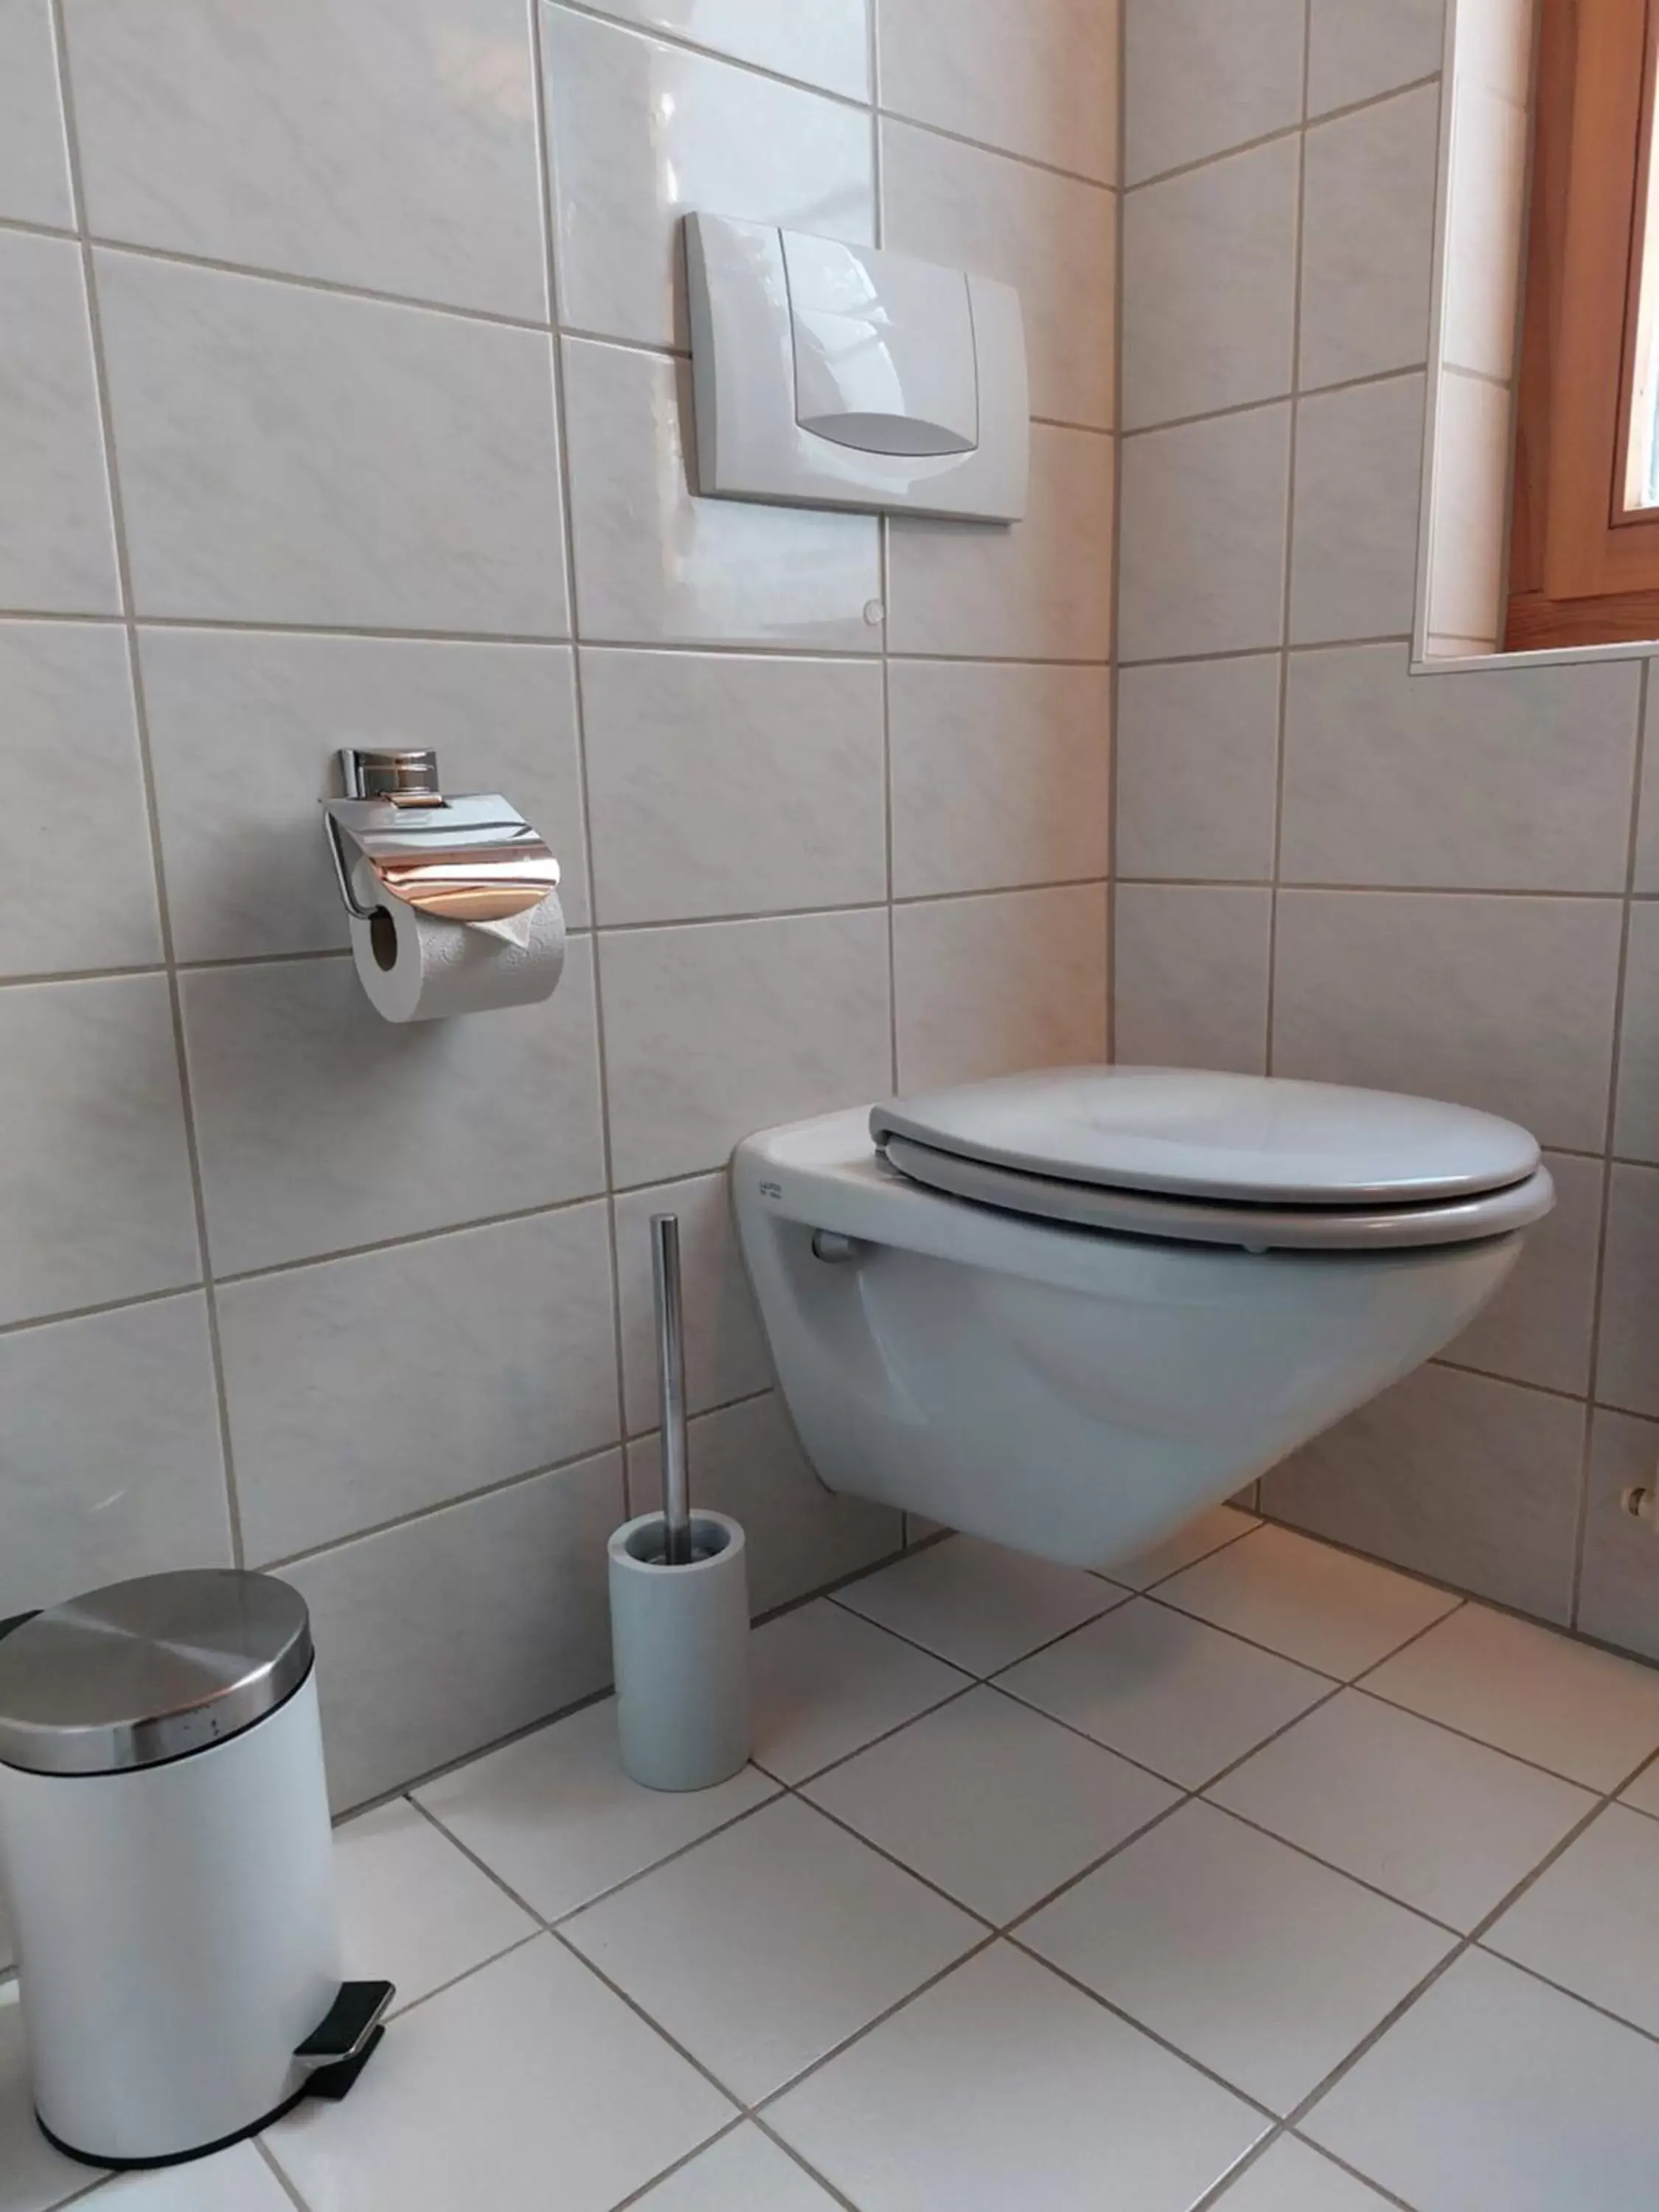 Toilet, Bathroom in BnB Elsenerhaus